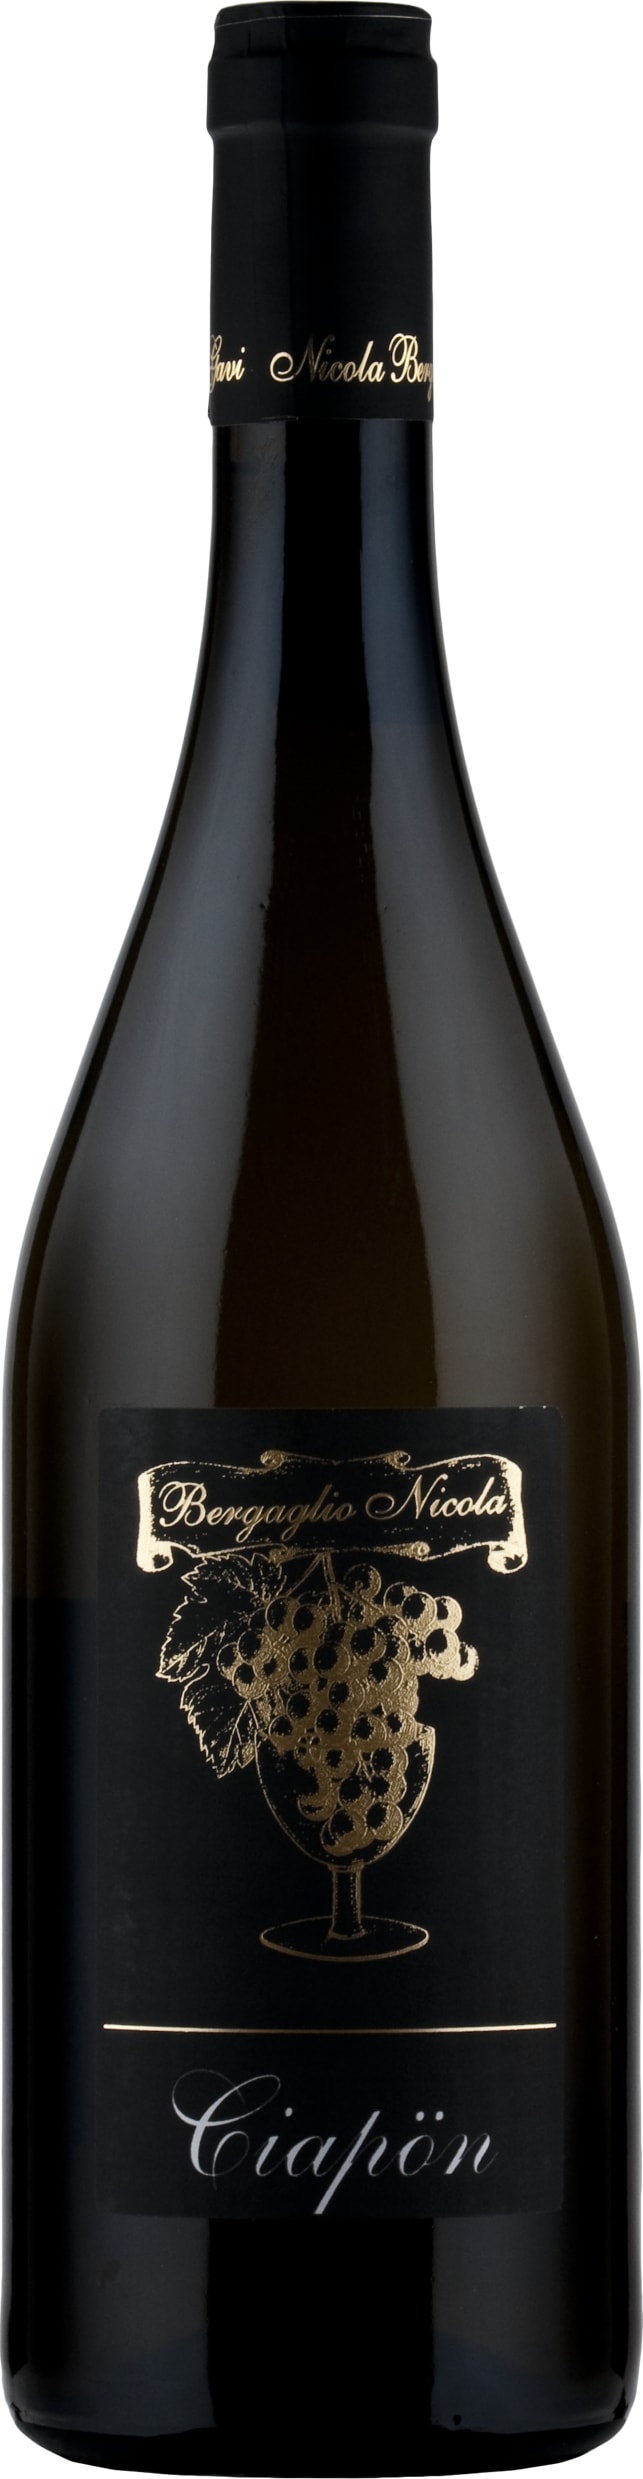 Bergaglio Gavi di Gavi DOCG, Vigneto Ciapon 2020 75cl - Buy Bergaglio Wines from GREAT WINES DIRECT wine shop